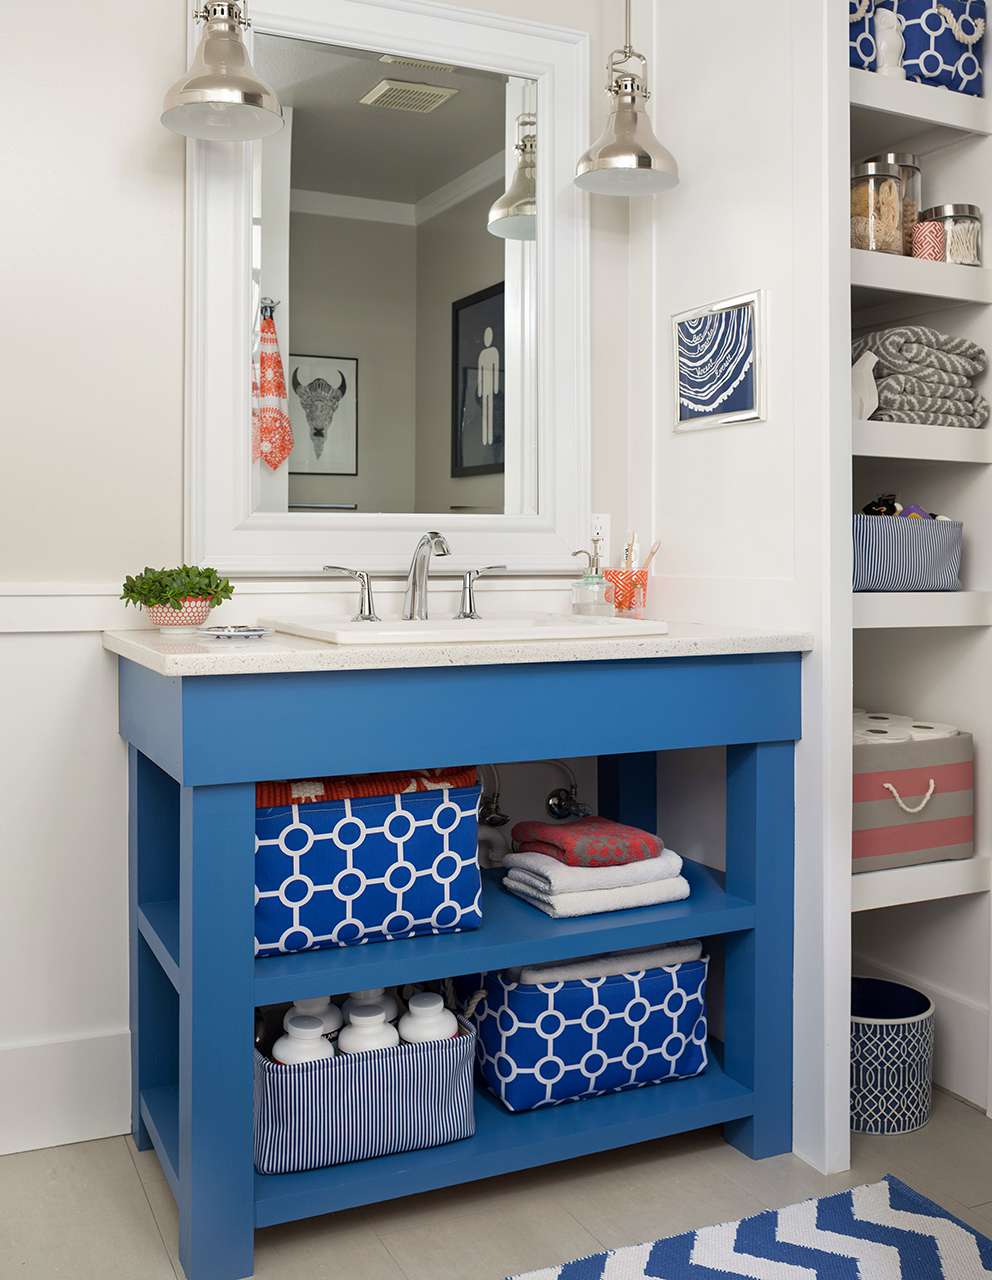 18 Diy Bathroom Vanity Ideas For Custom, Rustic Vanity Sink Ideas